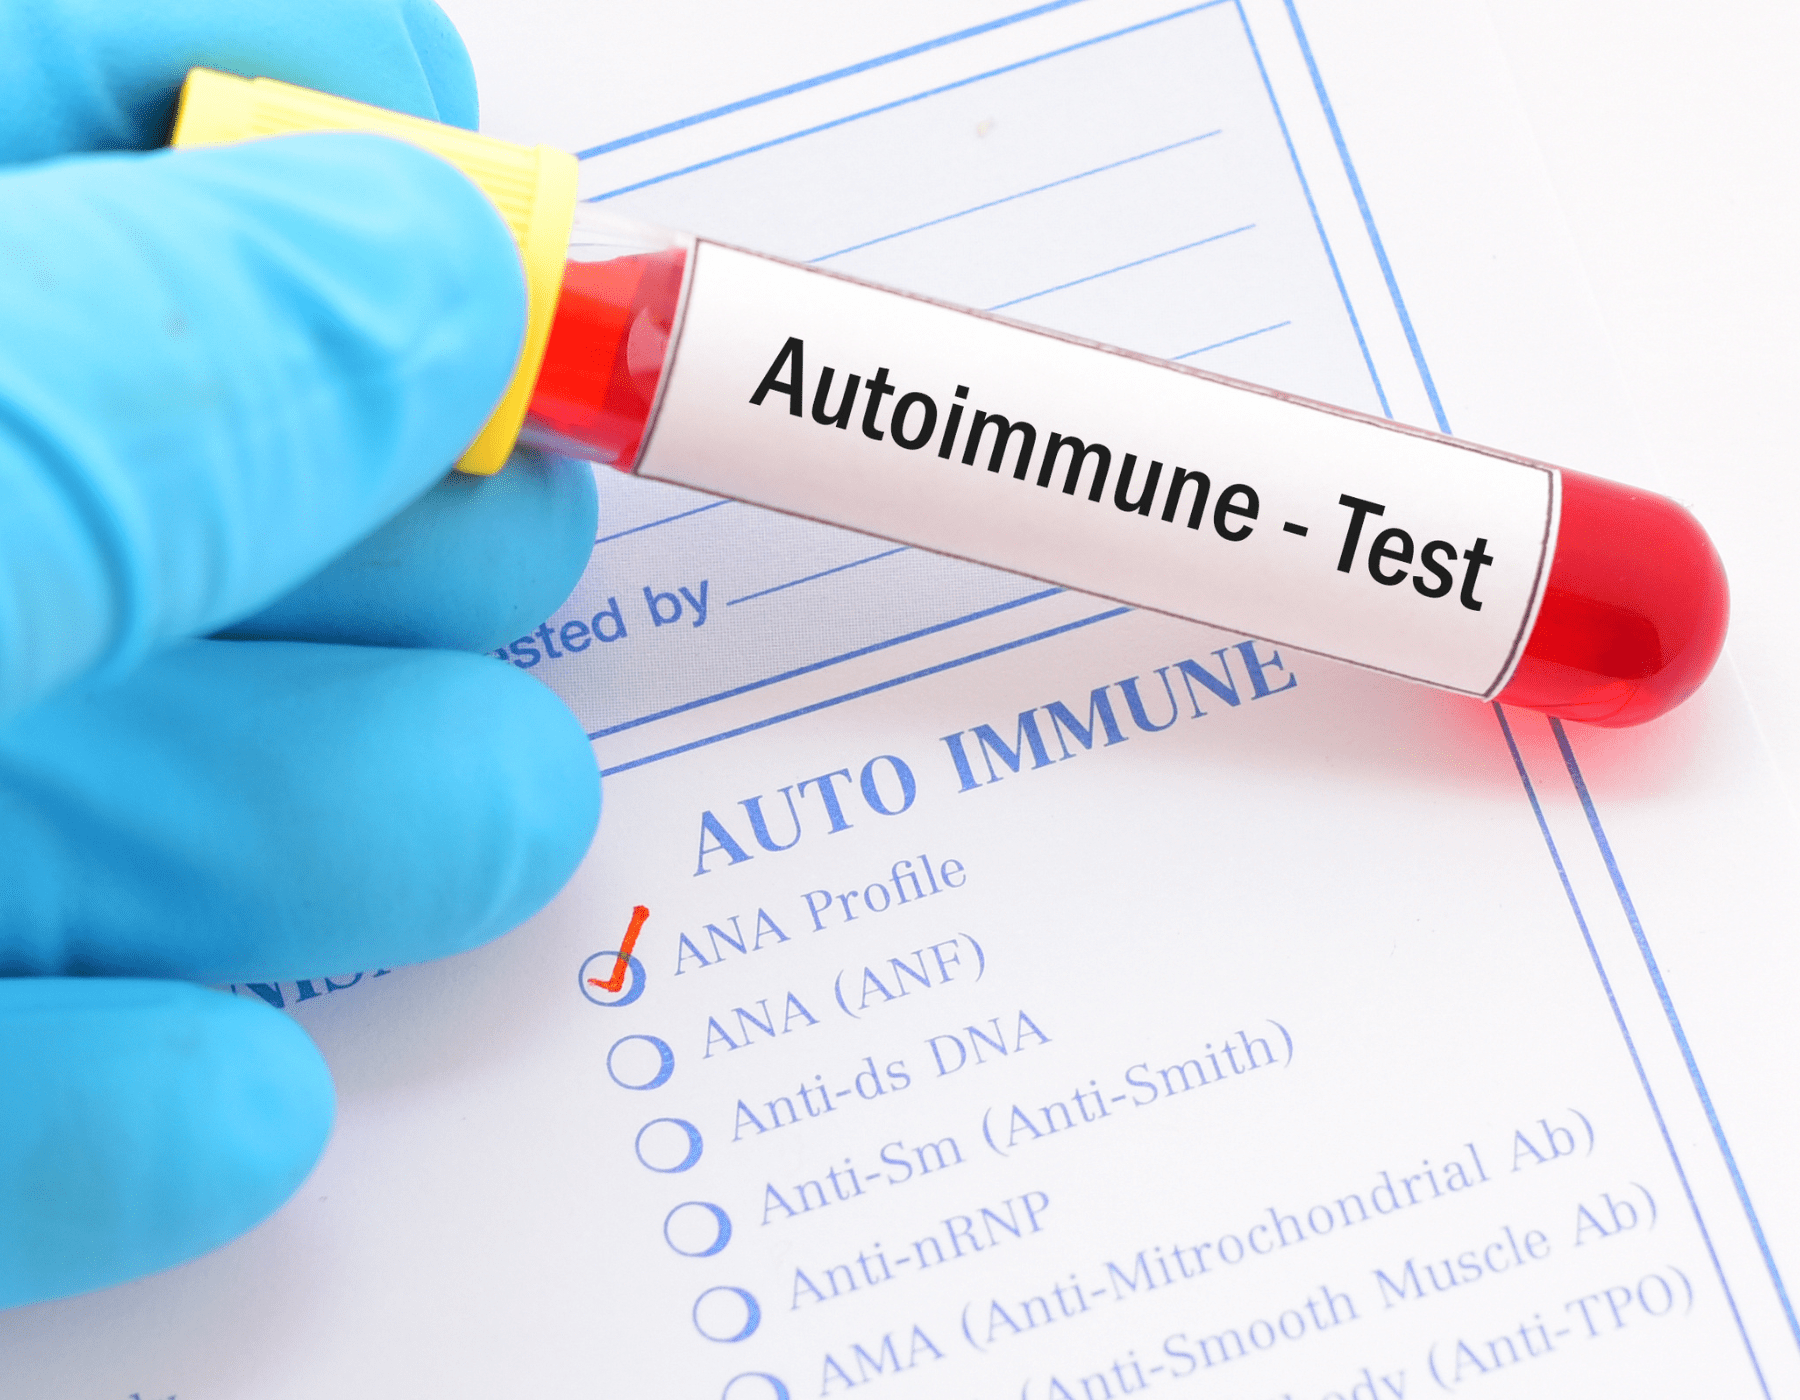 Autoimmune test pic for website